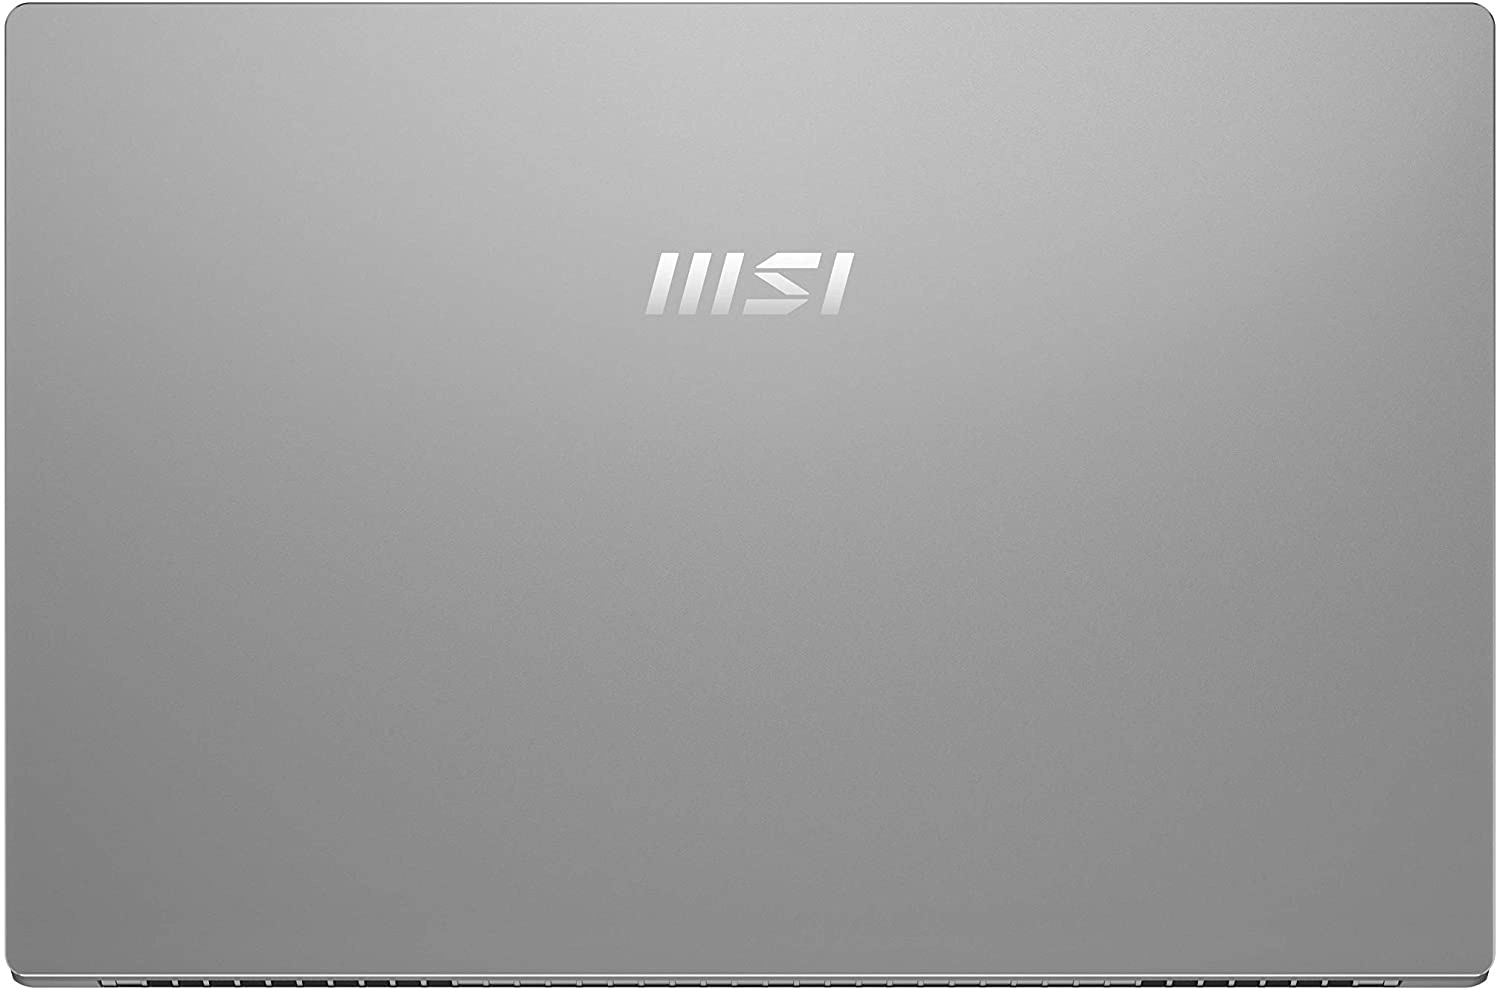 MSI Modern 15 A10M-486XES laptop image